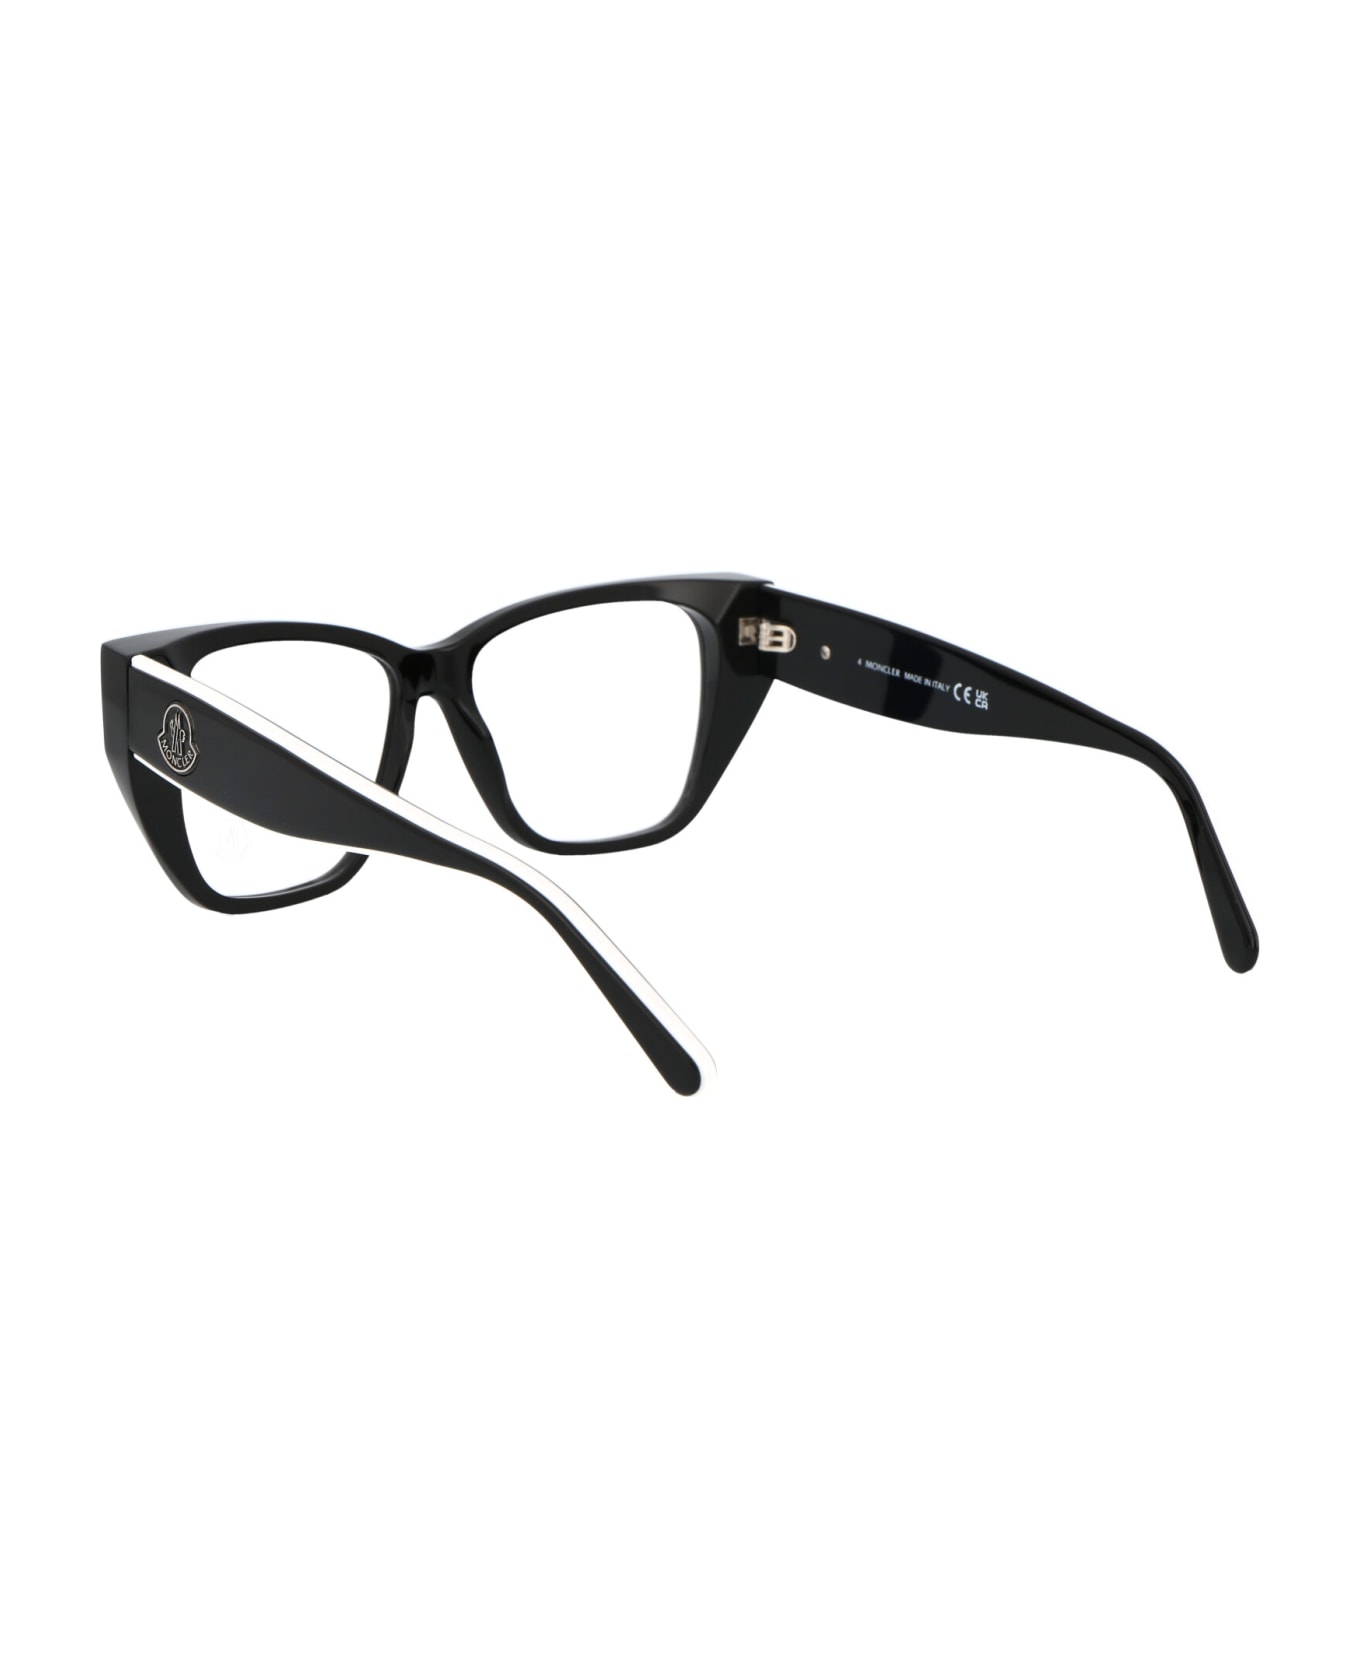 Moncler Eyewear Ml5187 Glasses - 001 BLACK